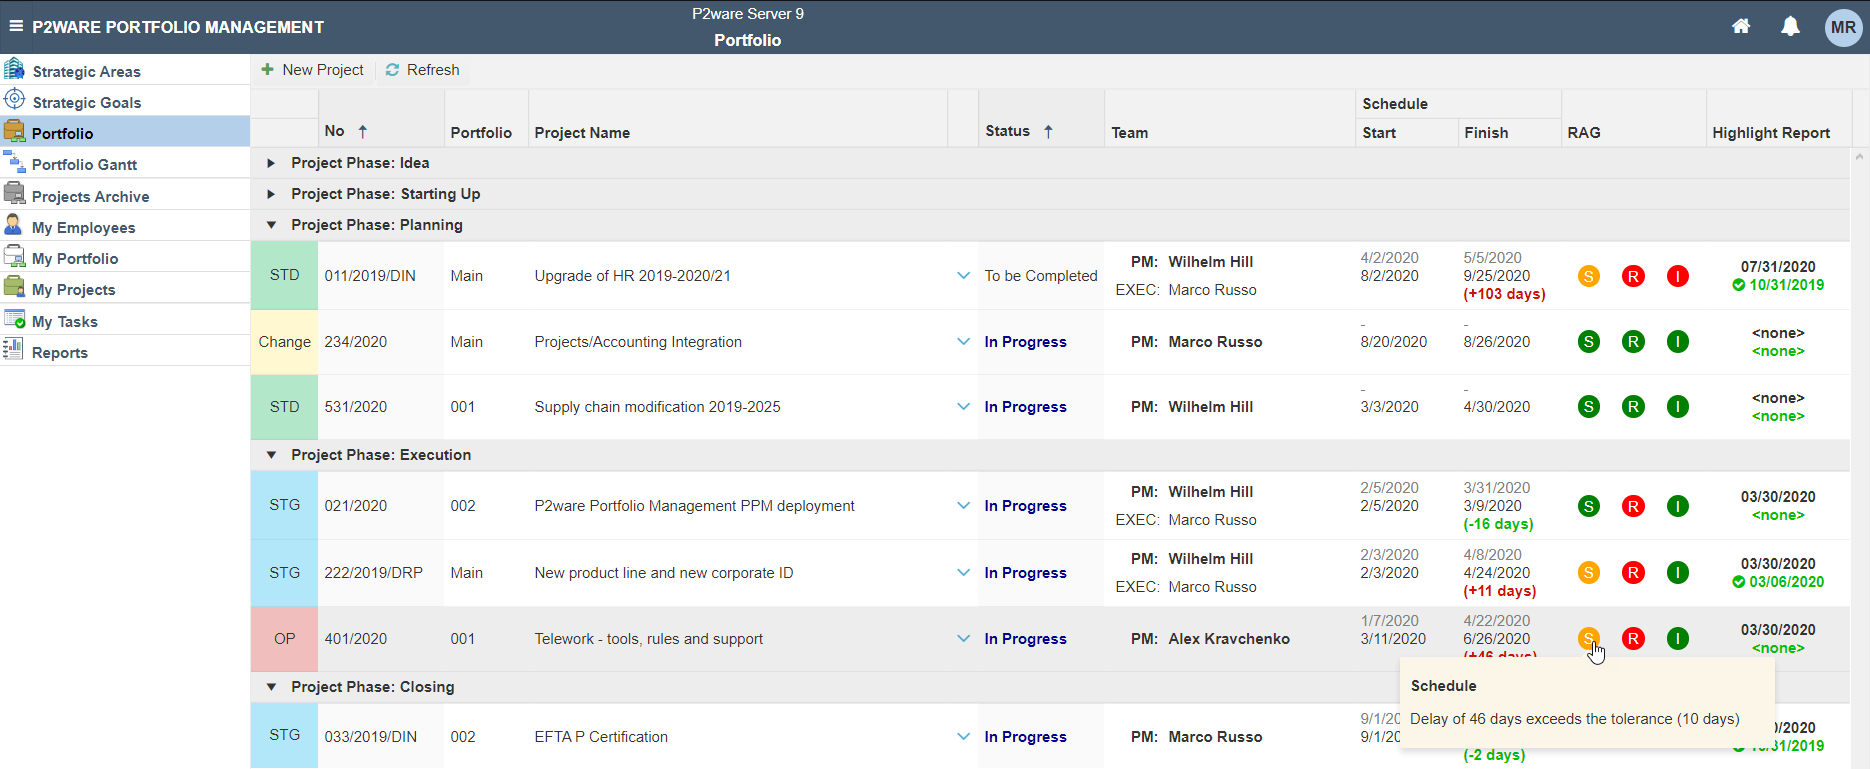 P2ware Portfolio Management – complete project portfolio management solution